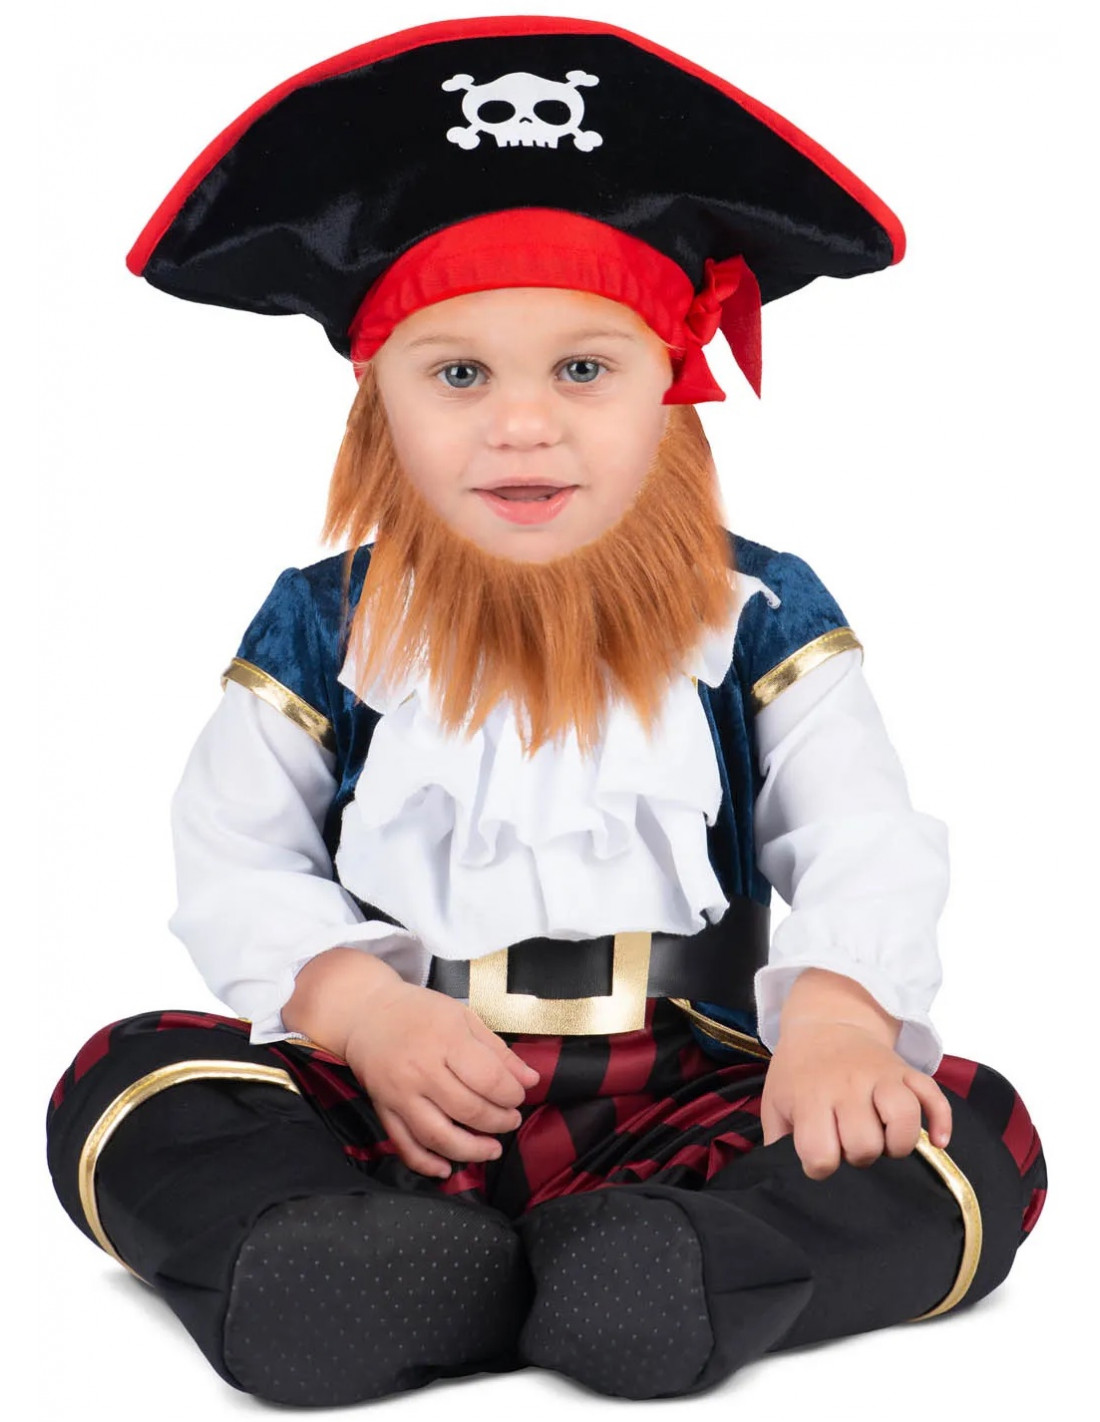 Comprar Disfraz Bebé Pirata Infantil de 7 a 12 meses